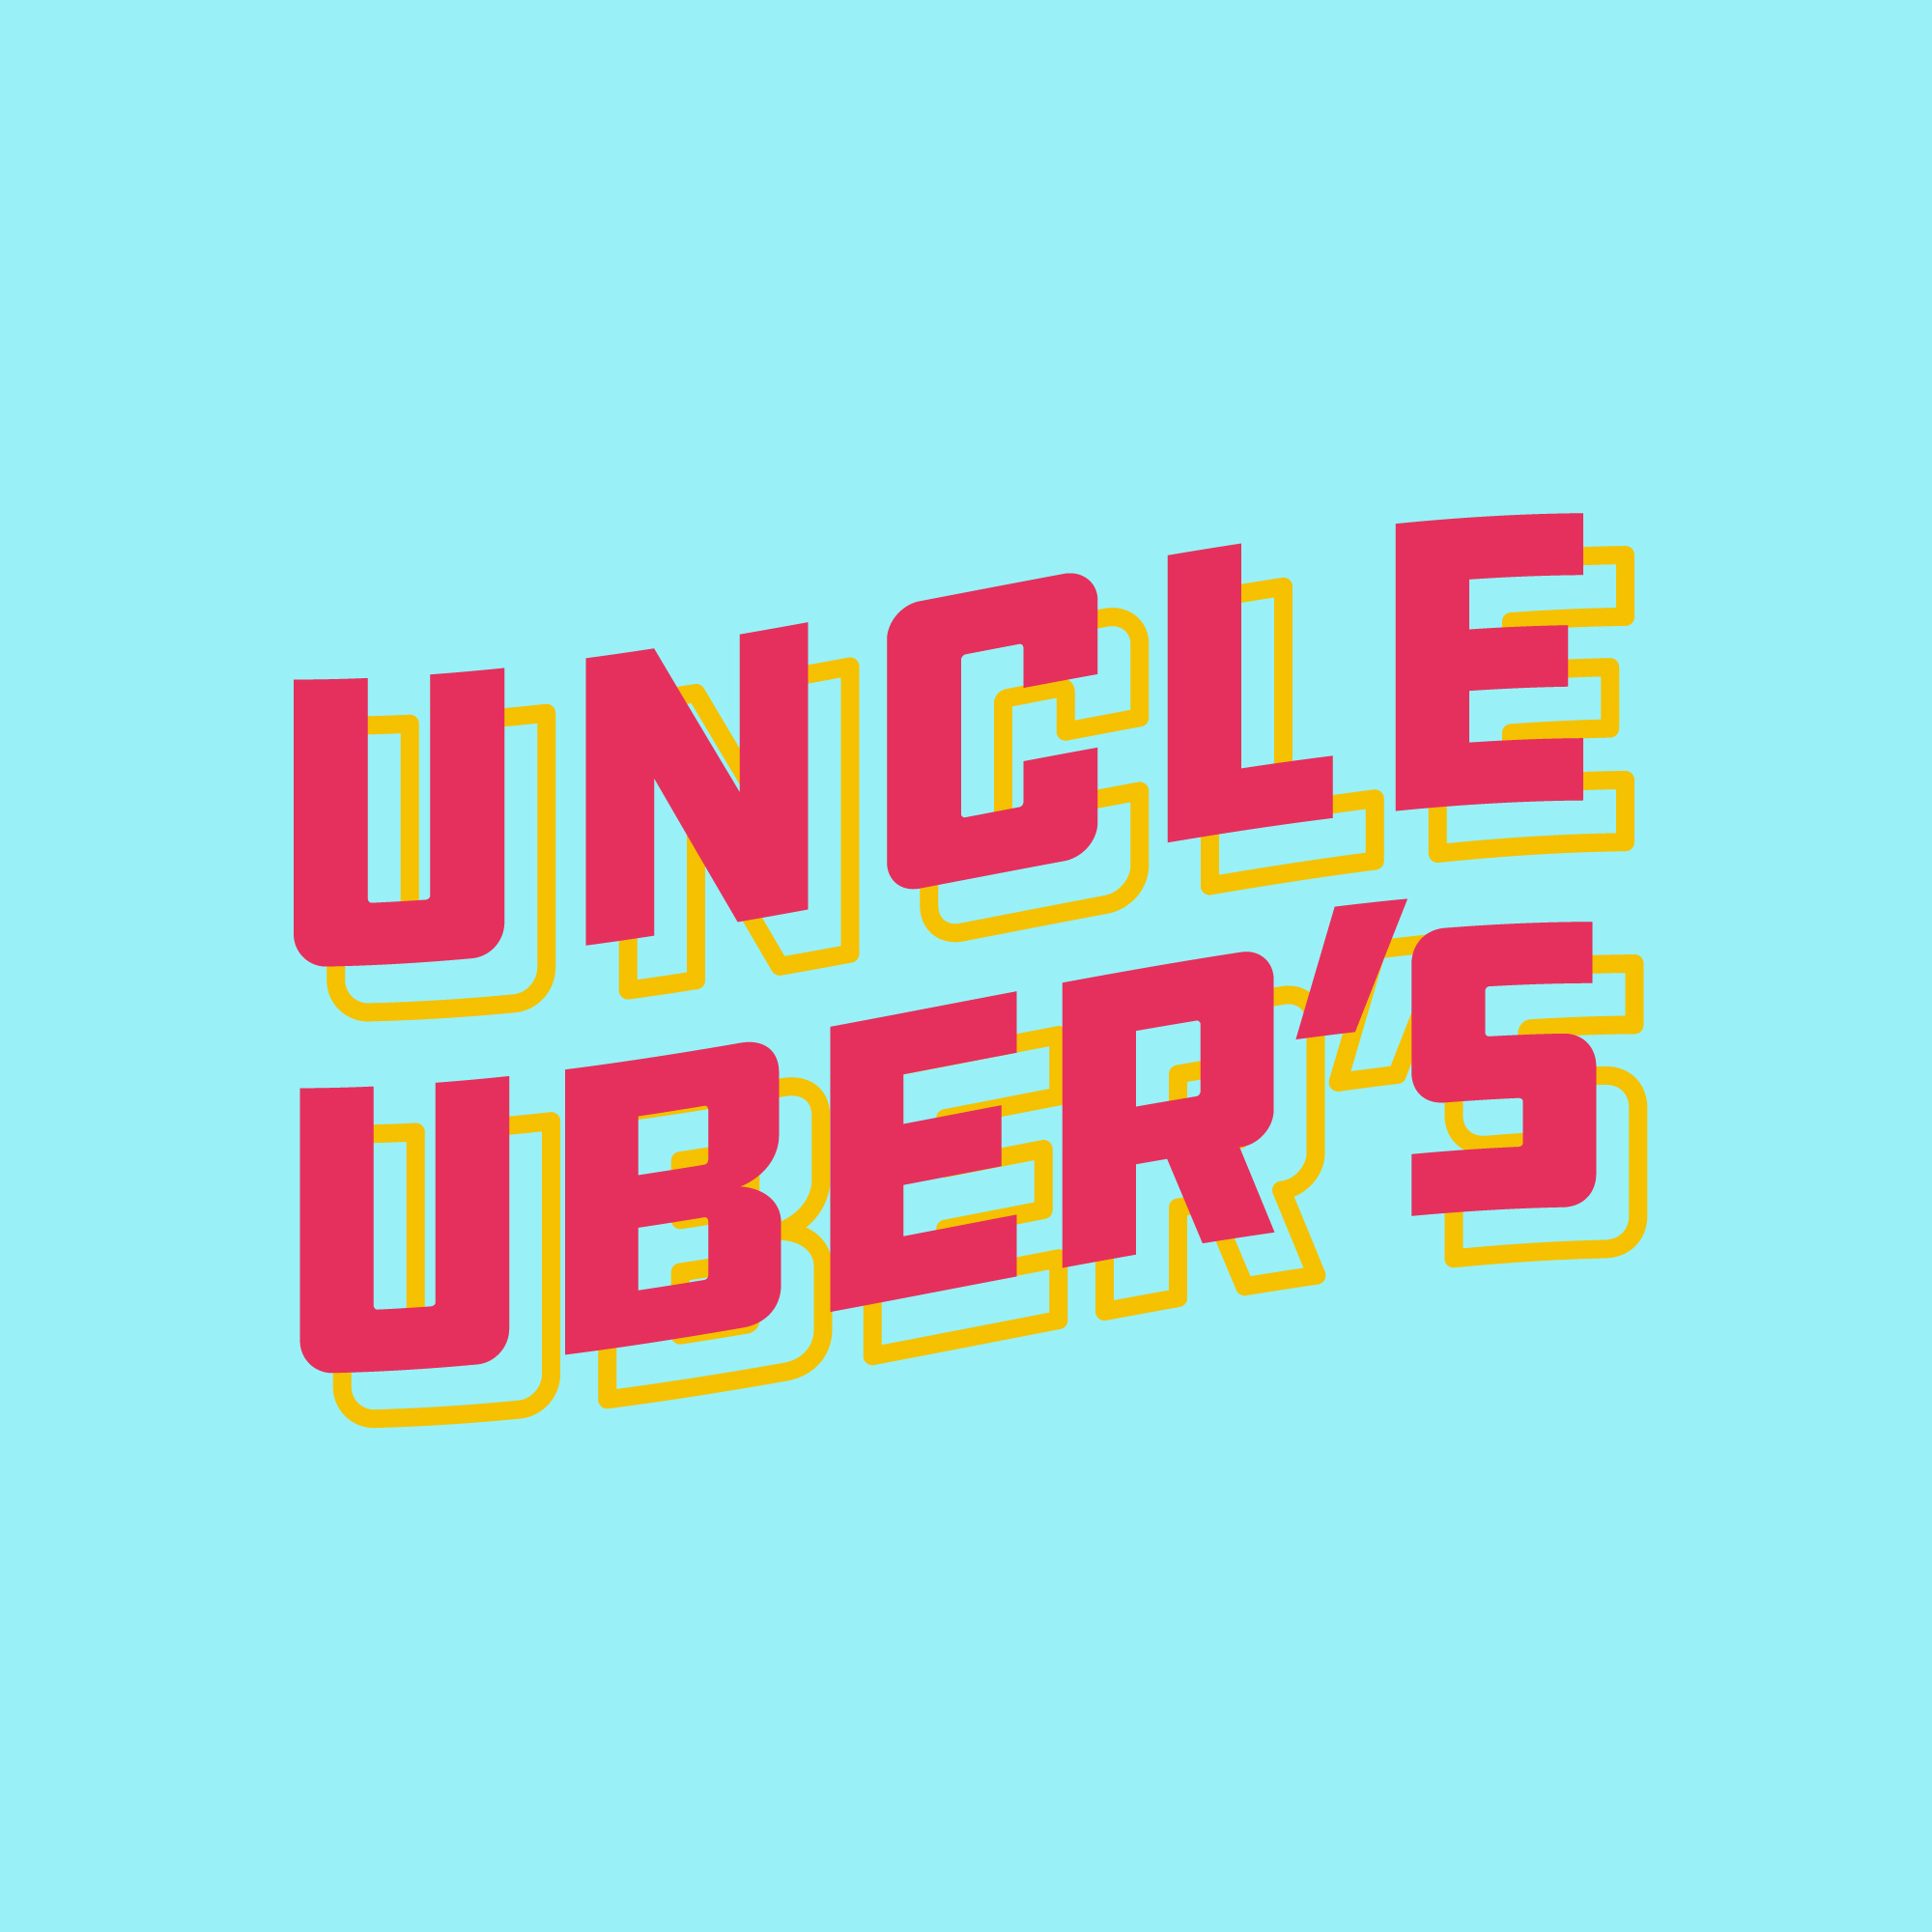 UncleUbers_IG_Badges-02